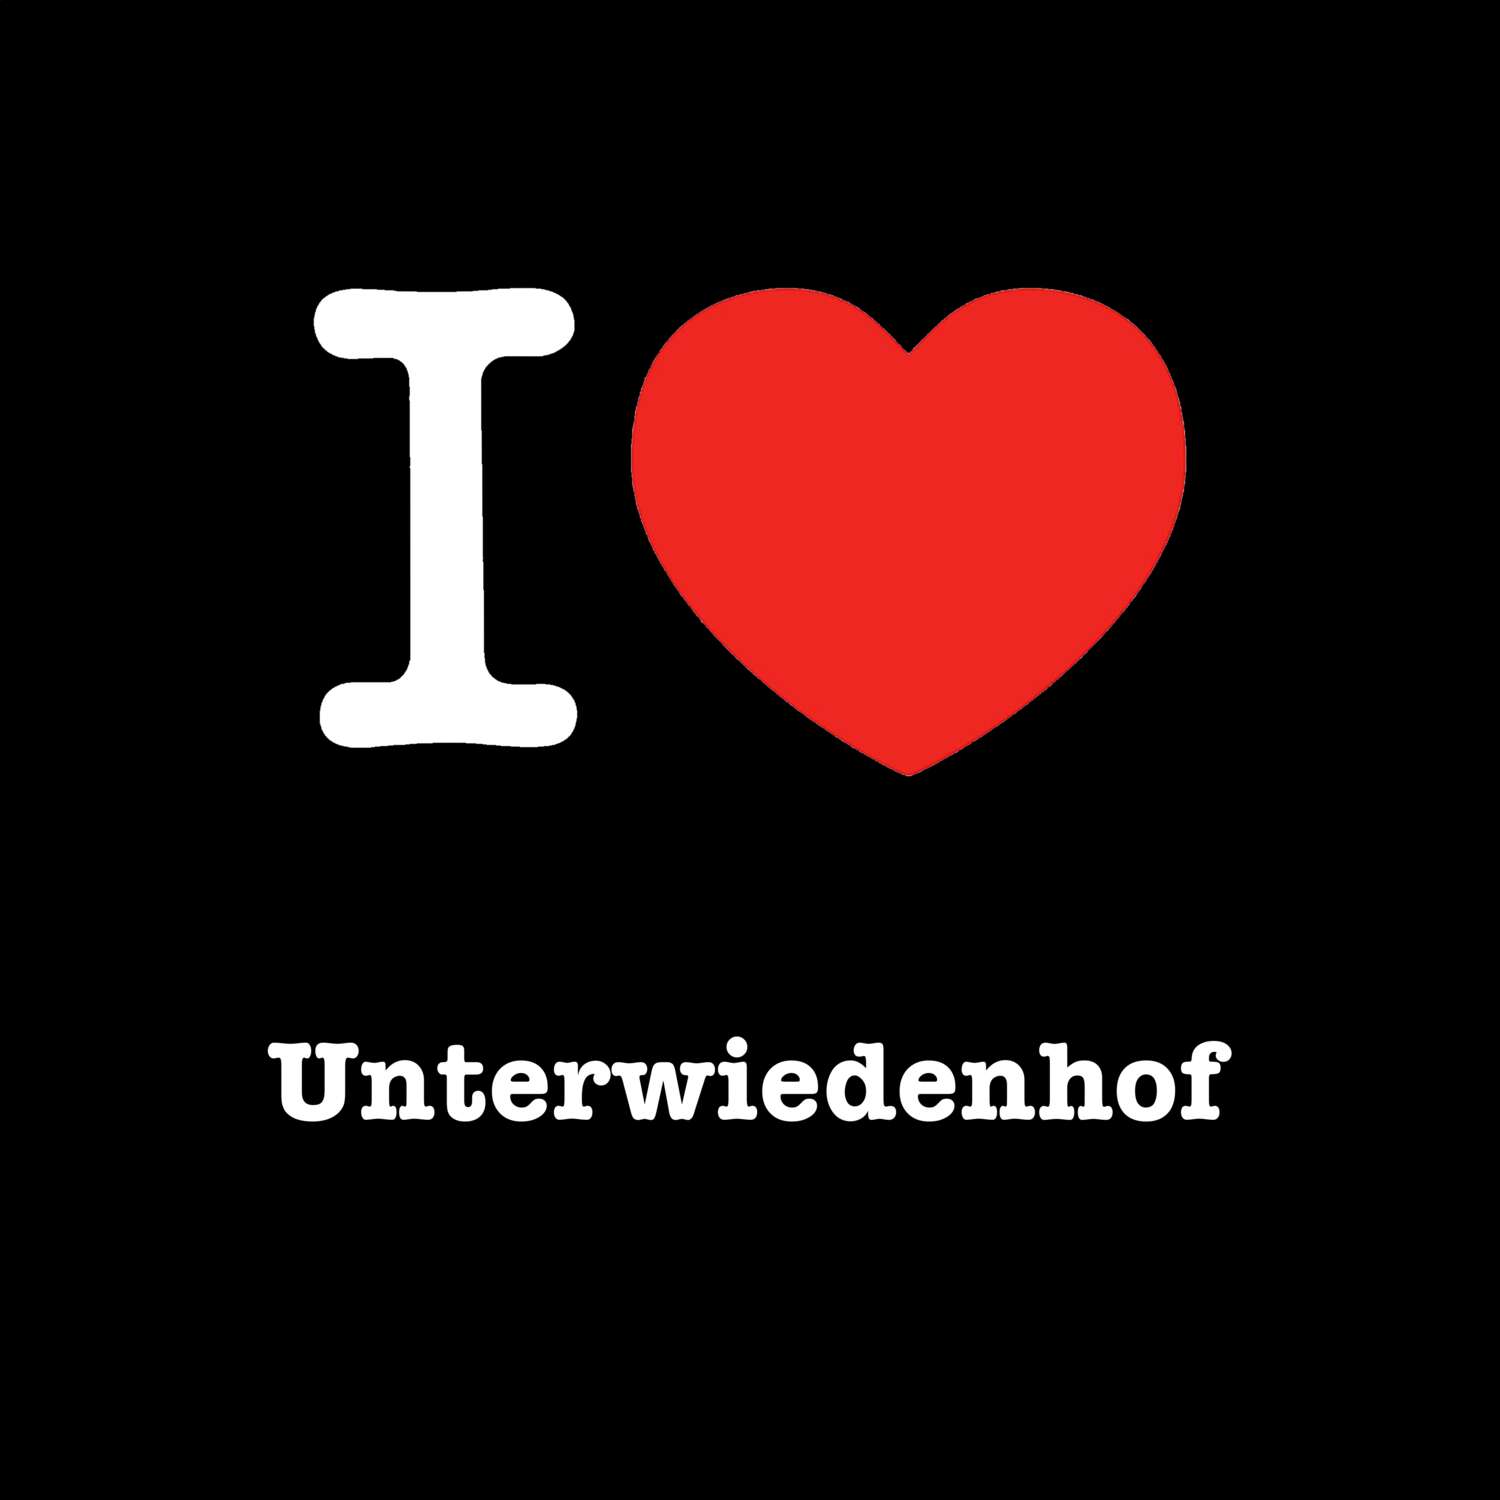 Unterwiedenhof T-Shirt »I love«